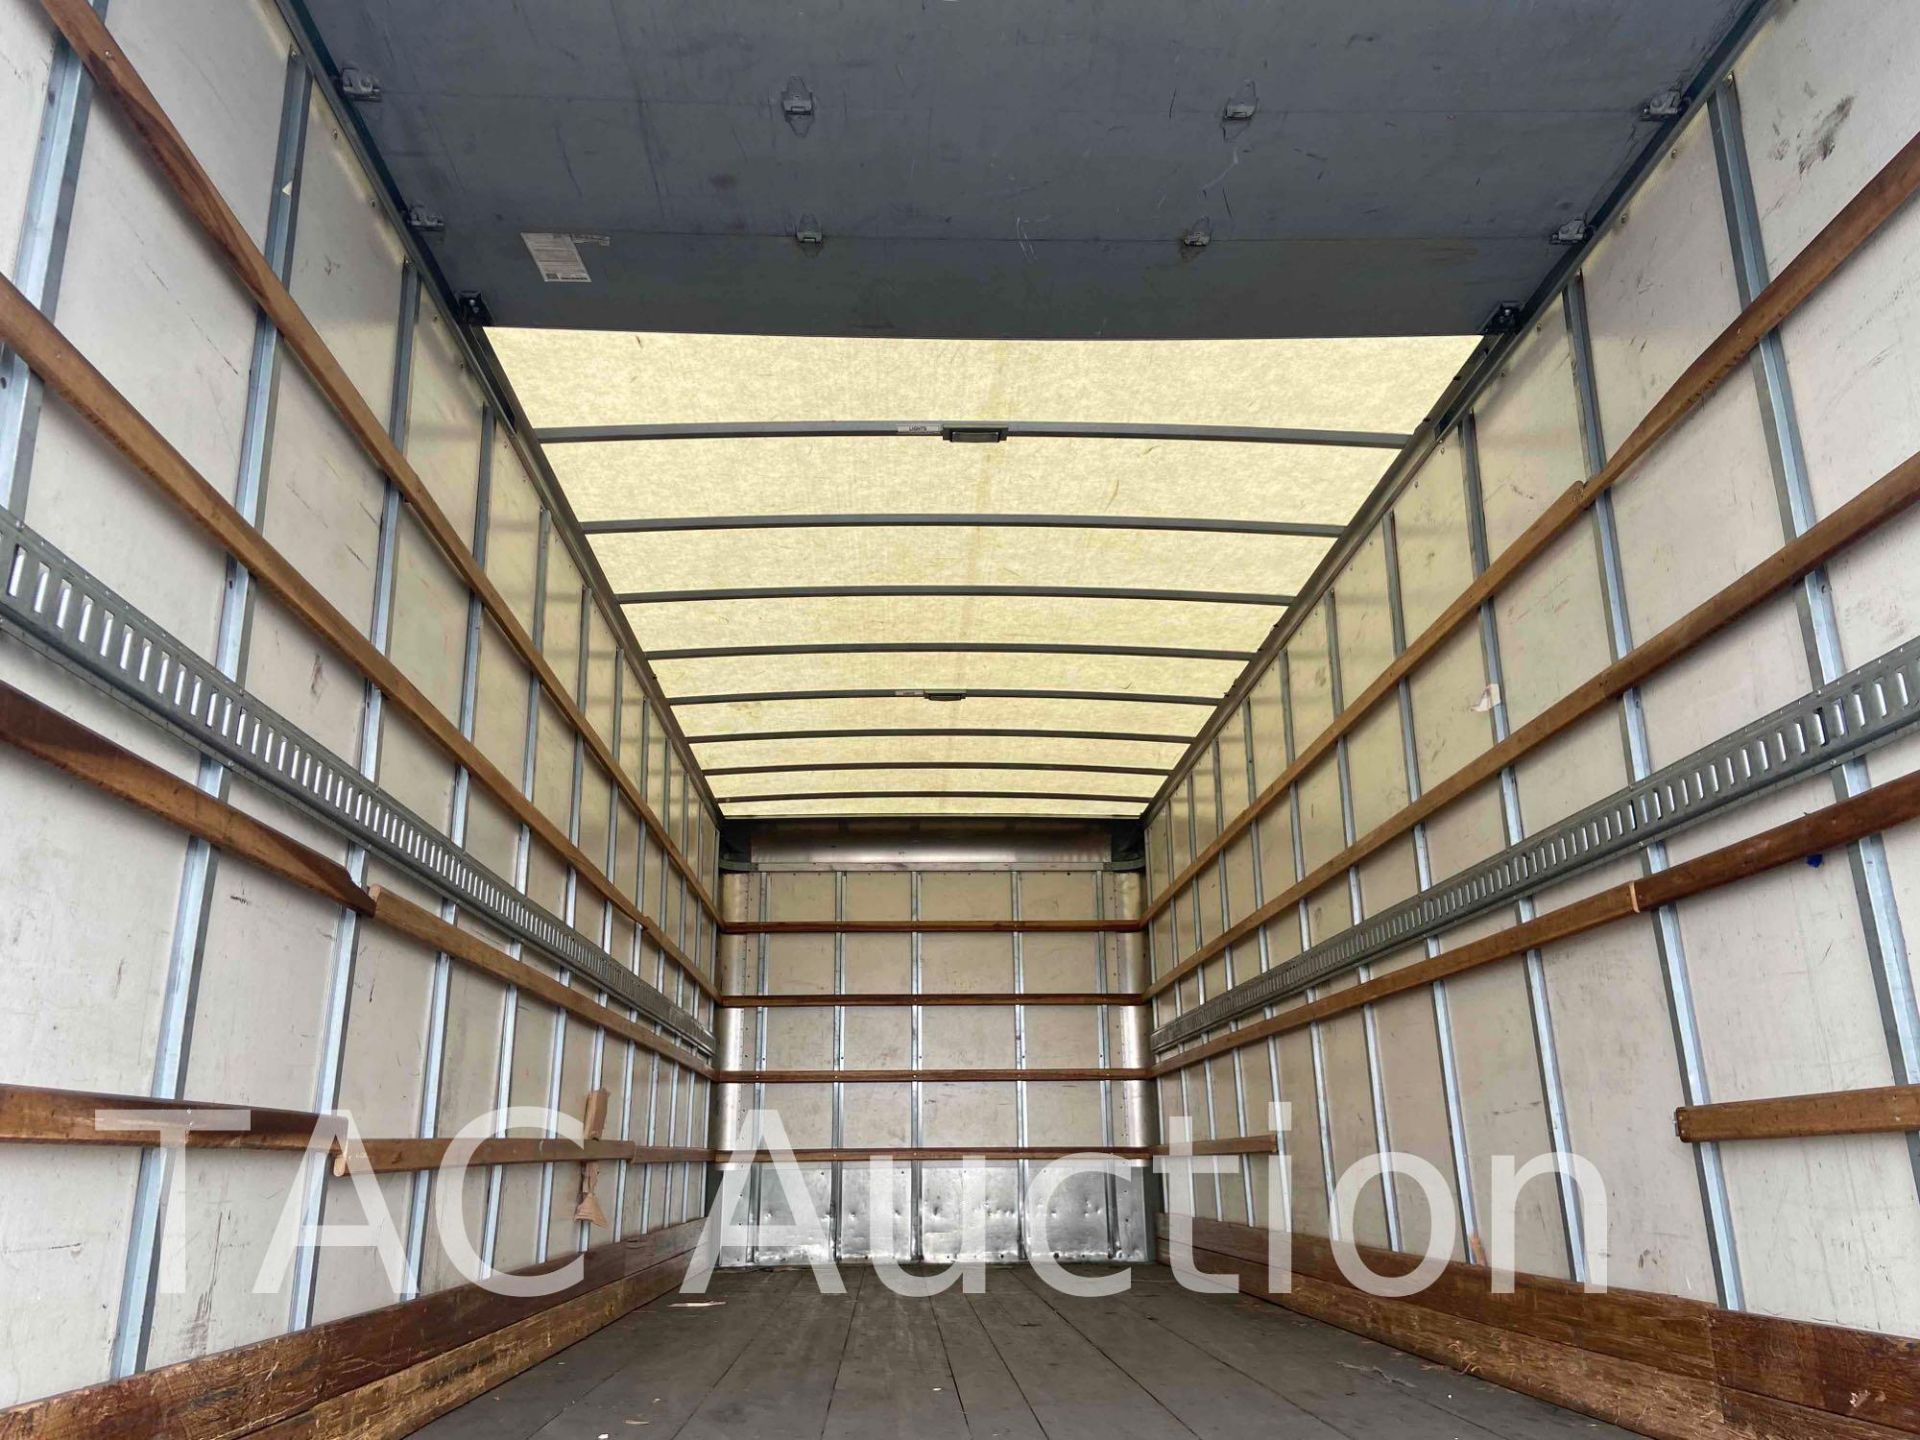 2017 Hino 268 26ft Box Truck - Image 45 of 76